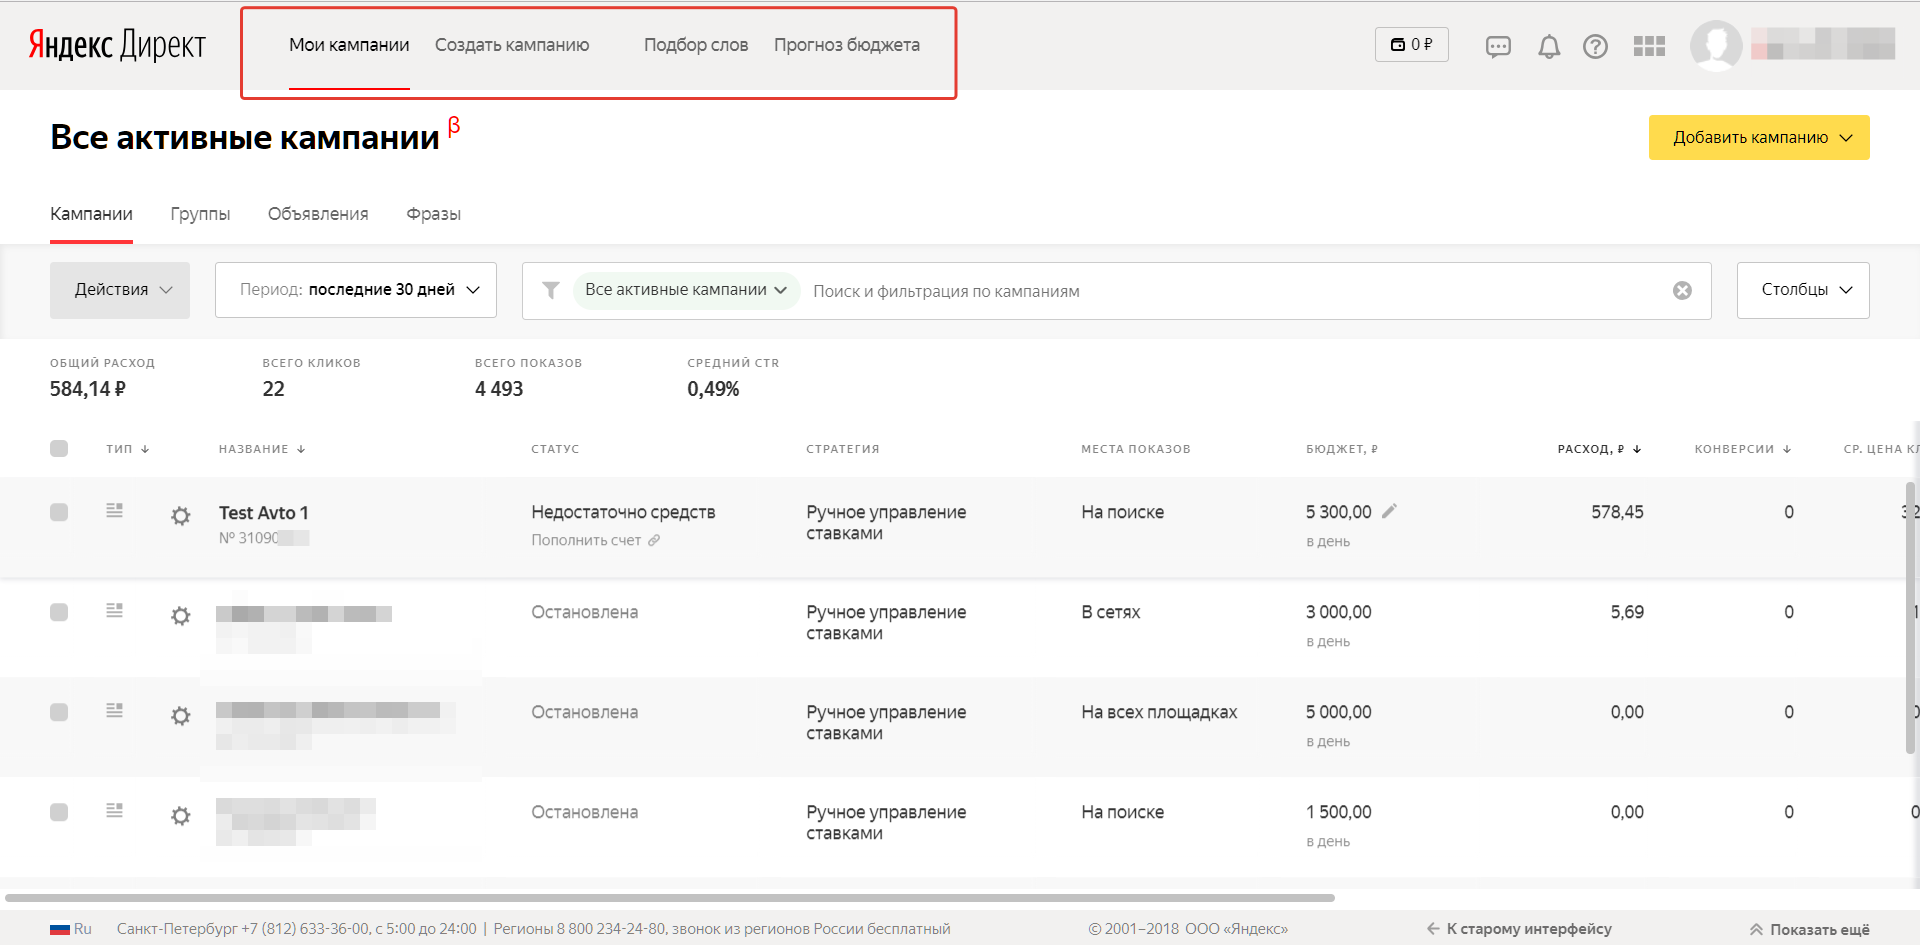 Обзор нового интерфейса Яндекс.Директа